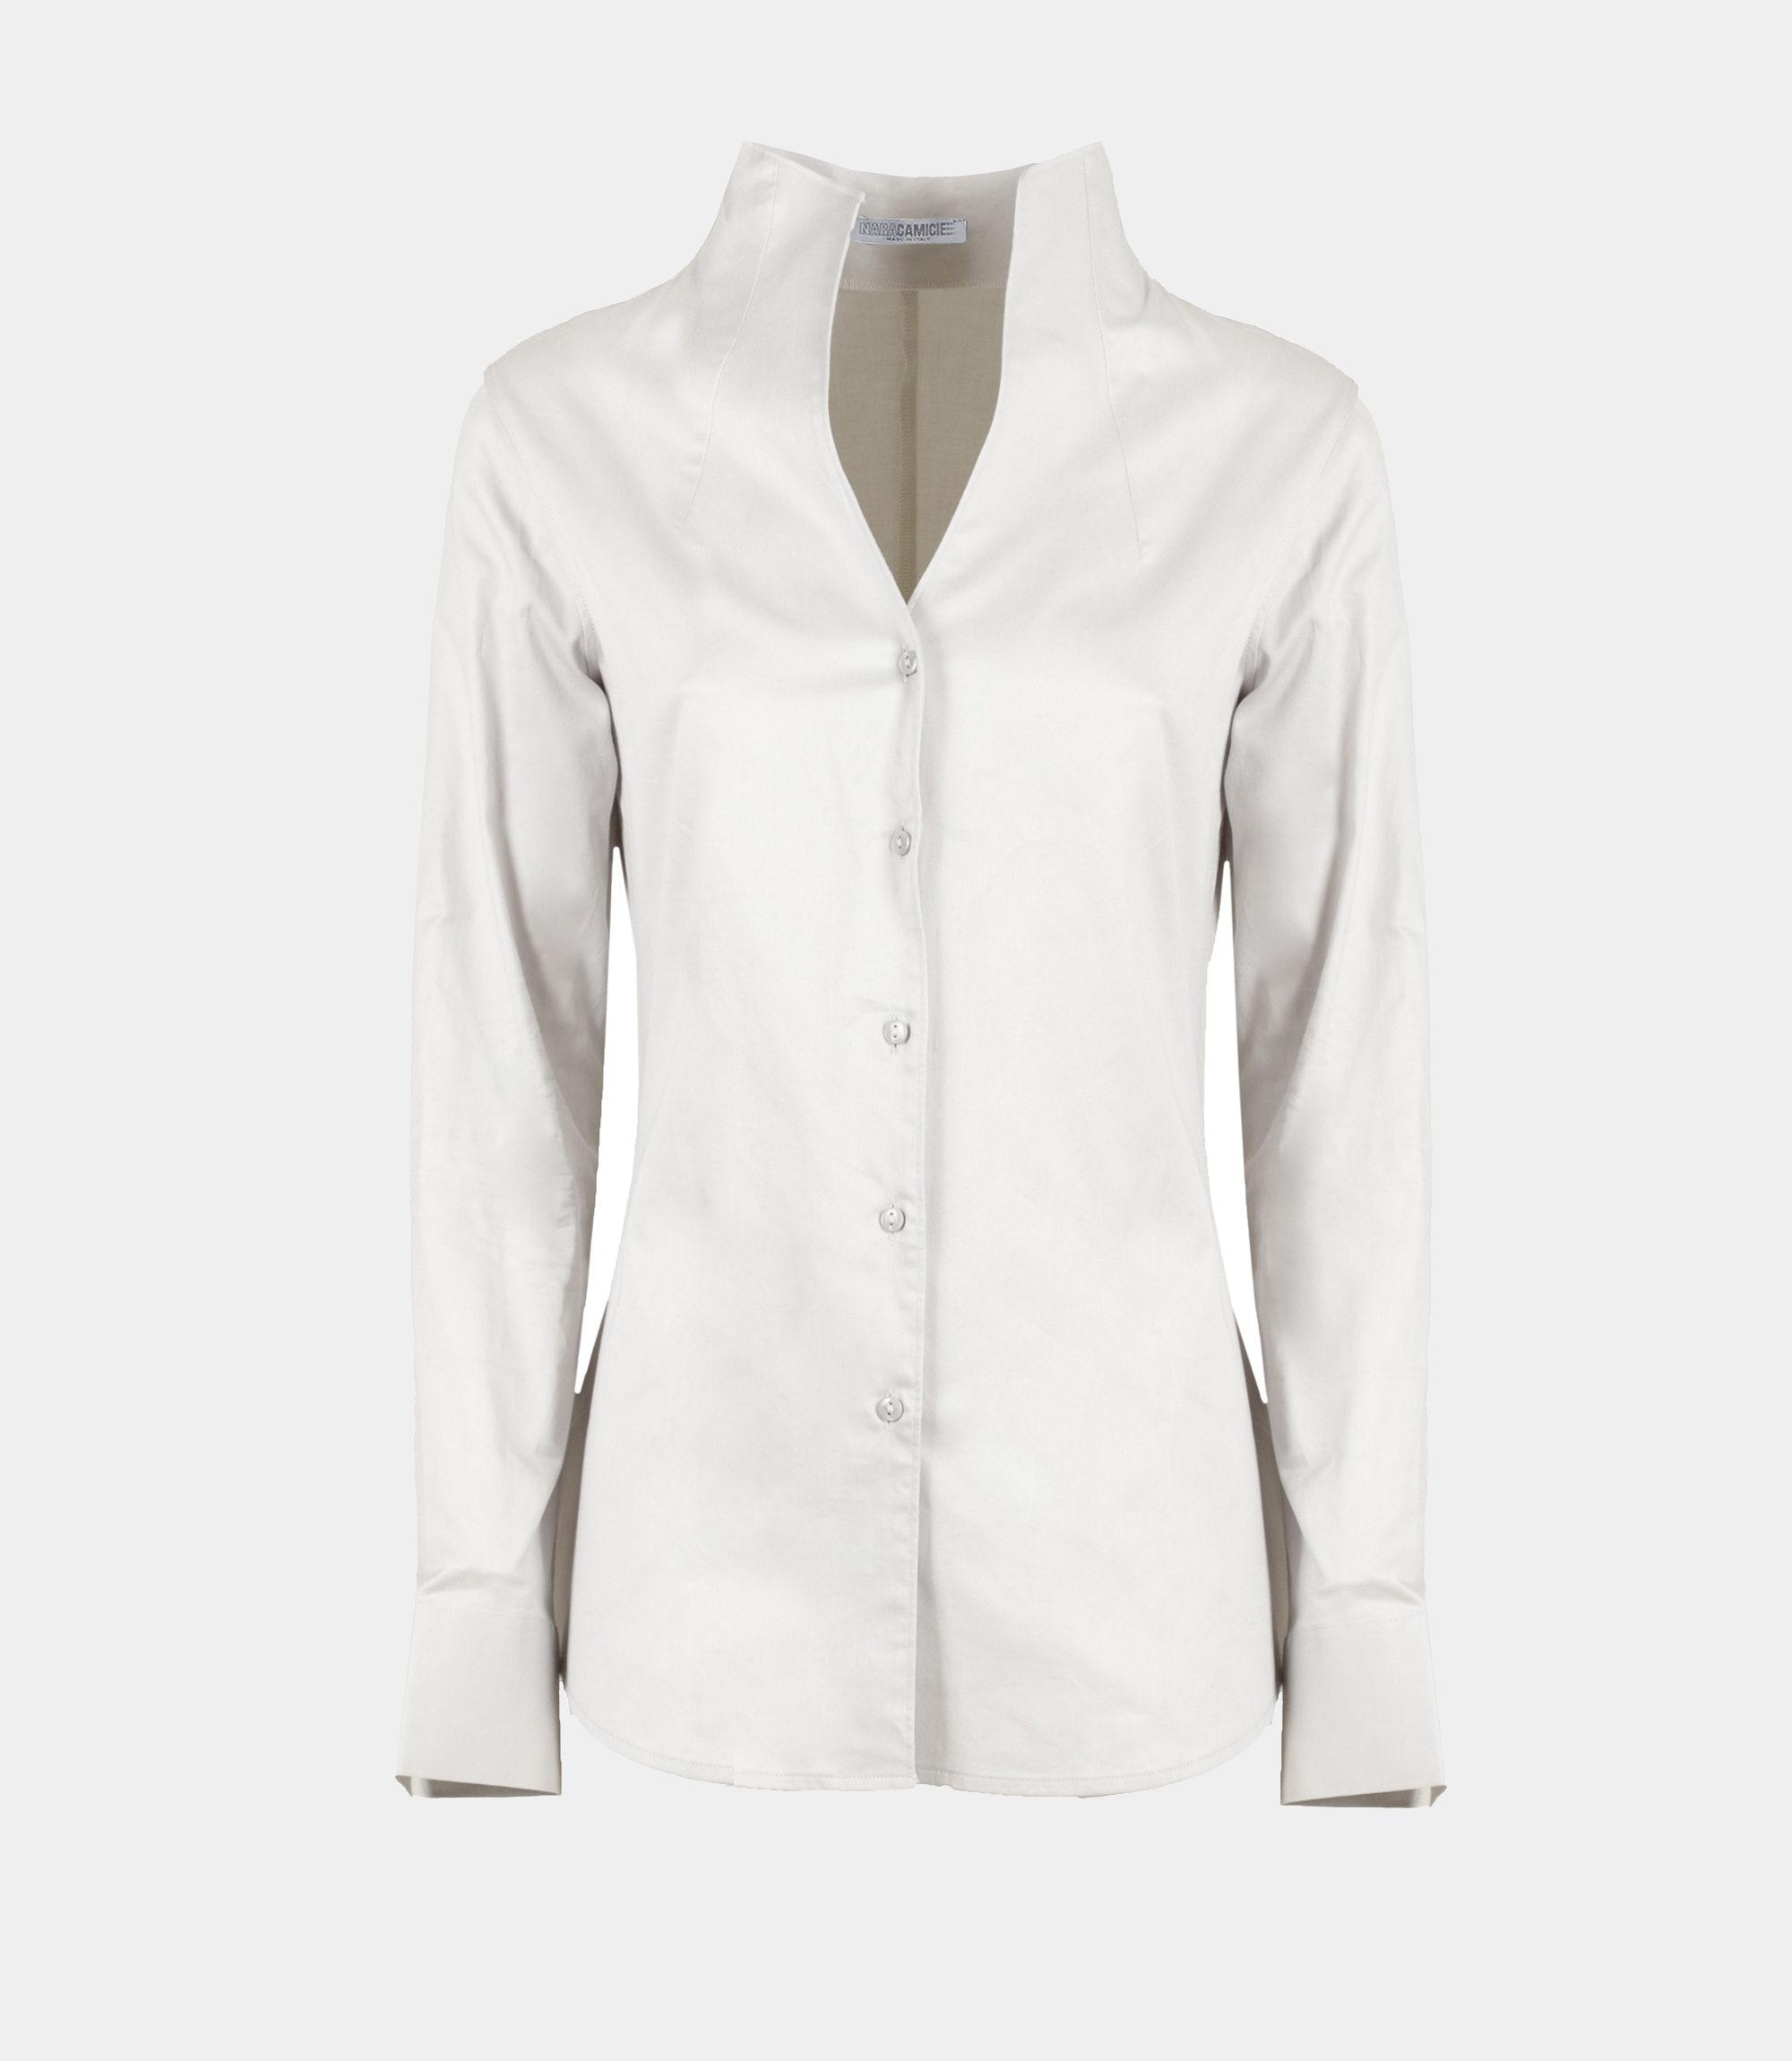 Virginia grey shirt - SHIRT - NaraMilano